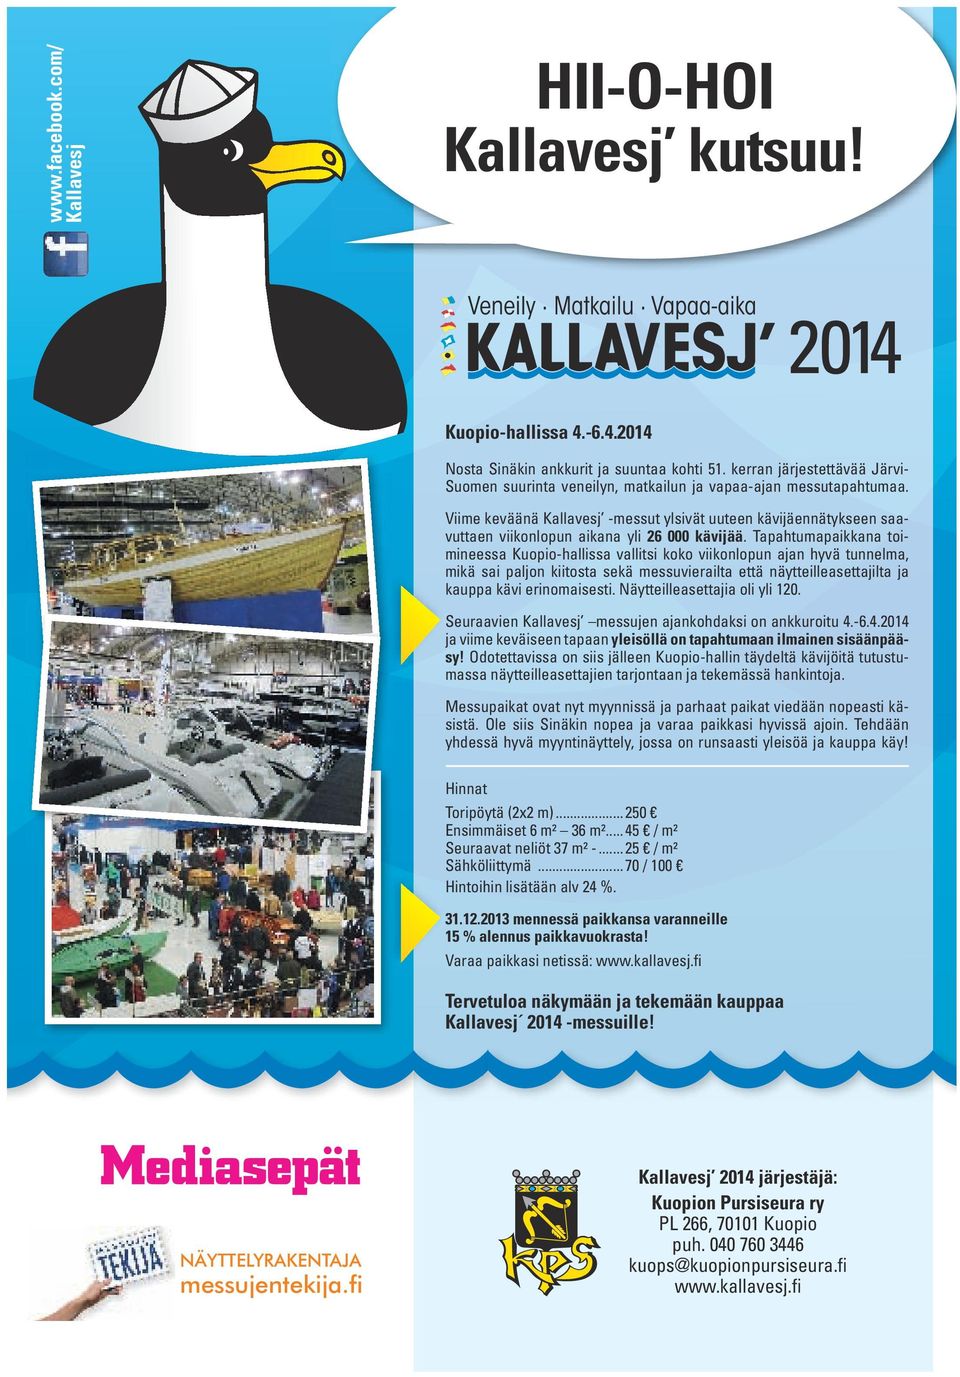 Viime keväänä Kallavesj -messut ylsivät uuteen kävijäennätykseen saavuttaen viikonlopun aikana yli 26 000 kävijää.